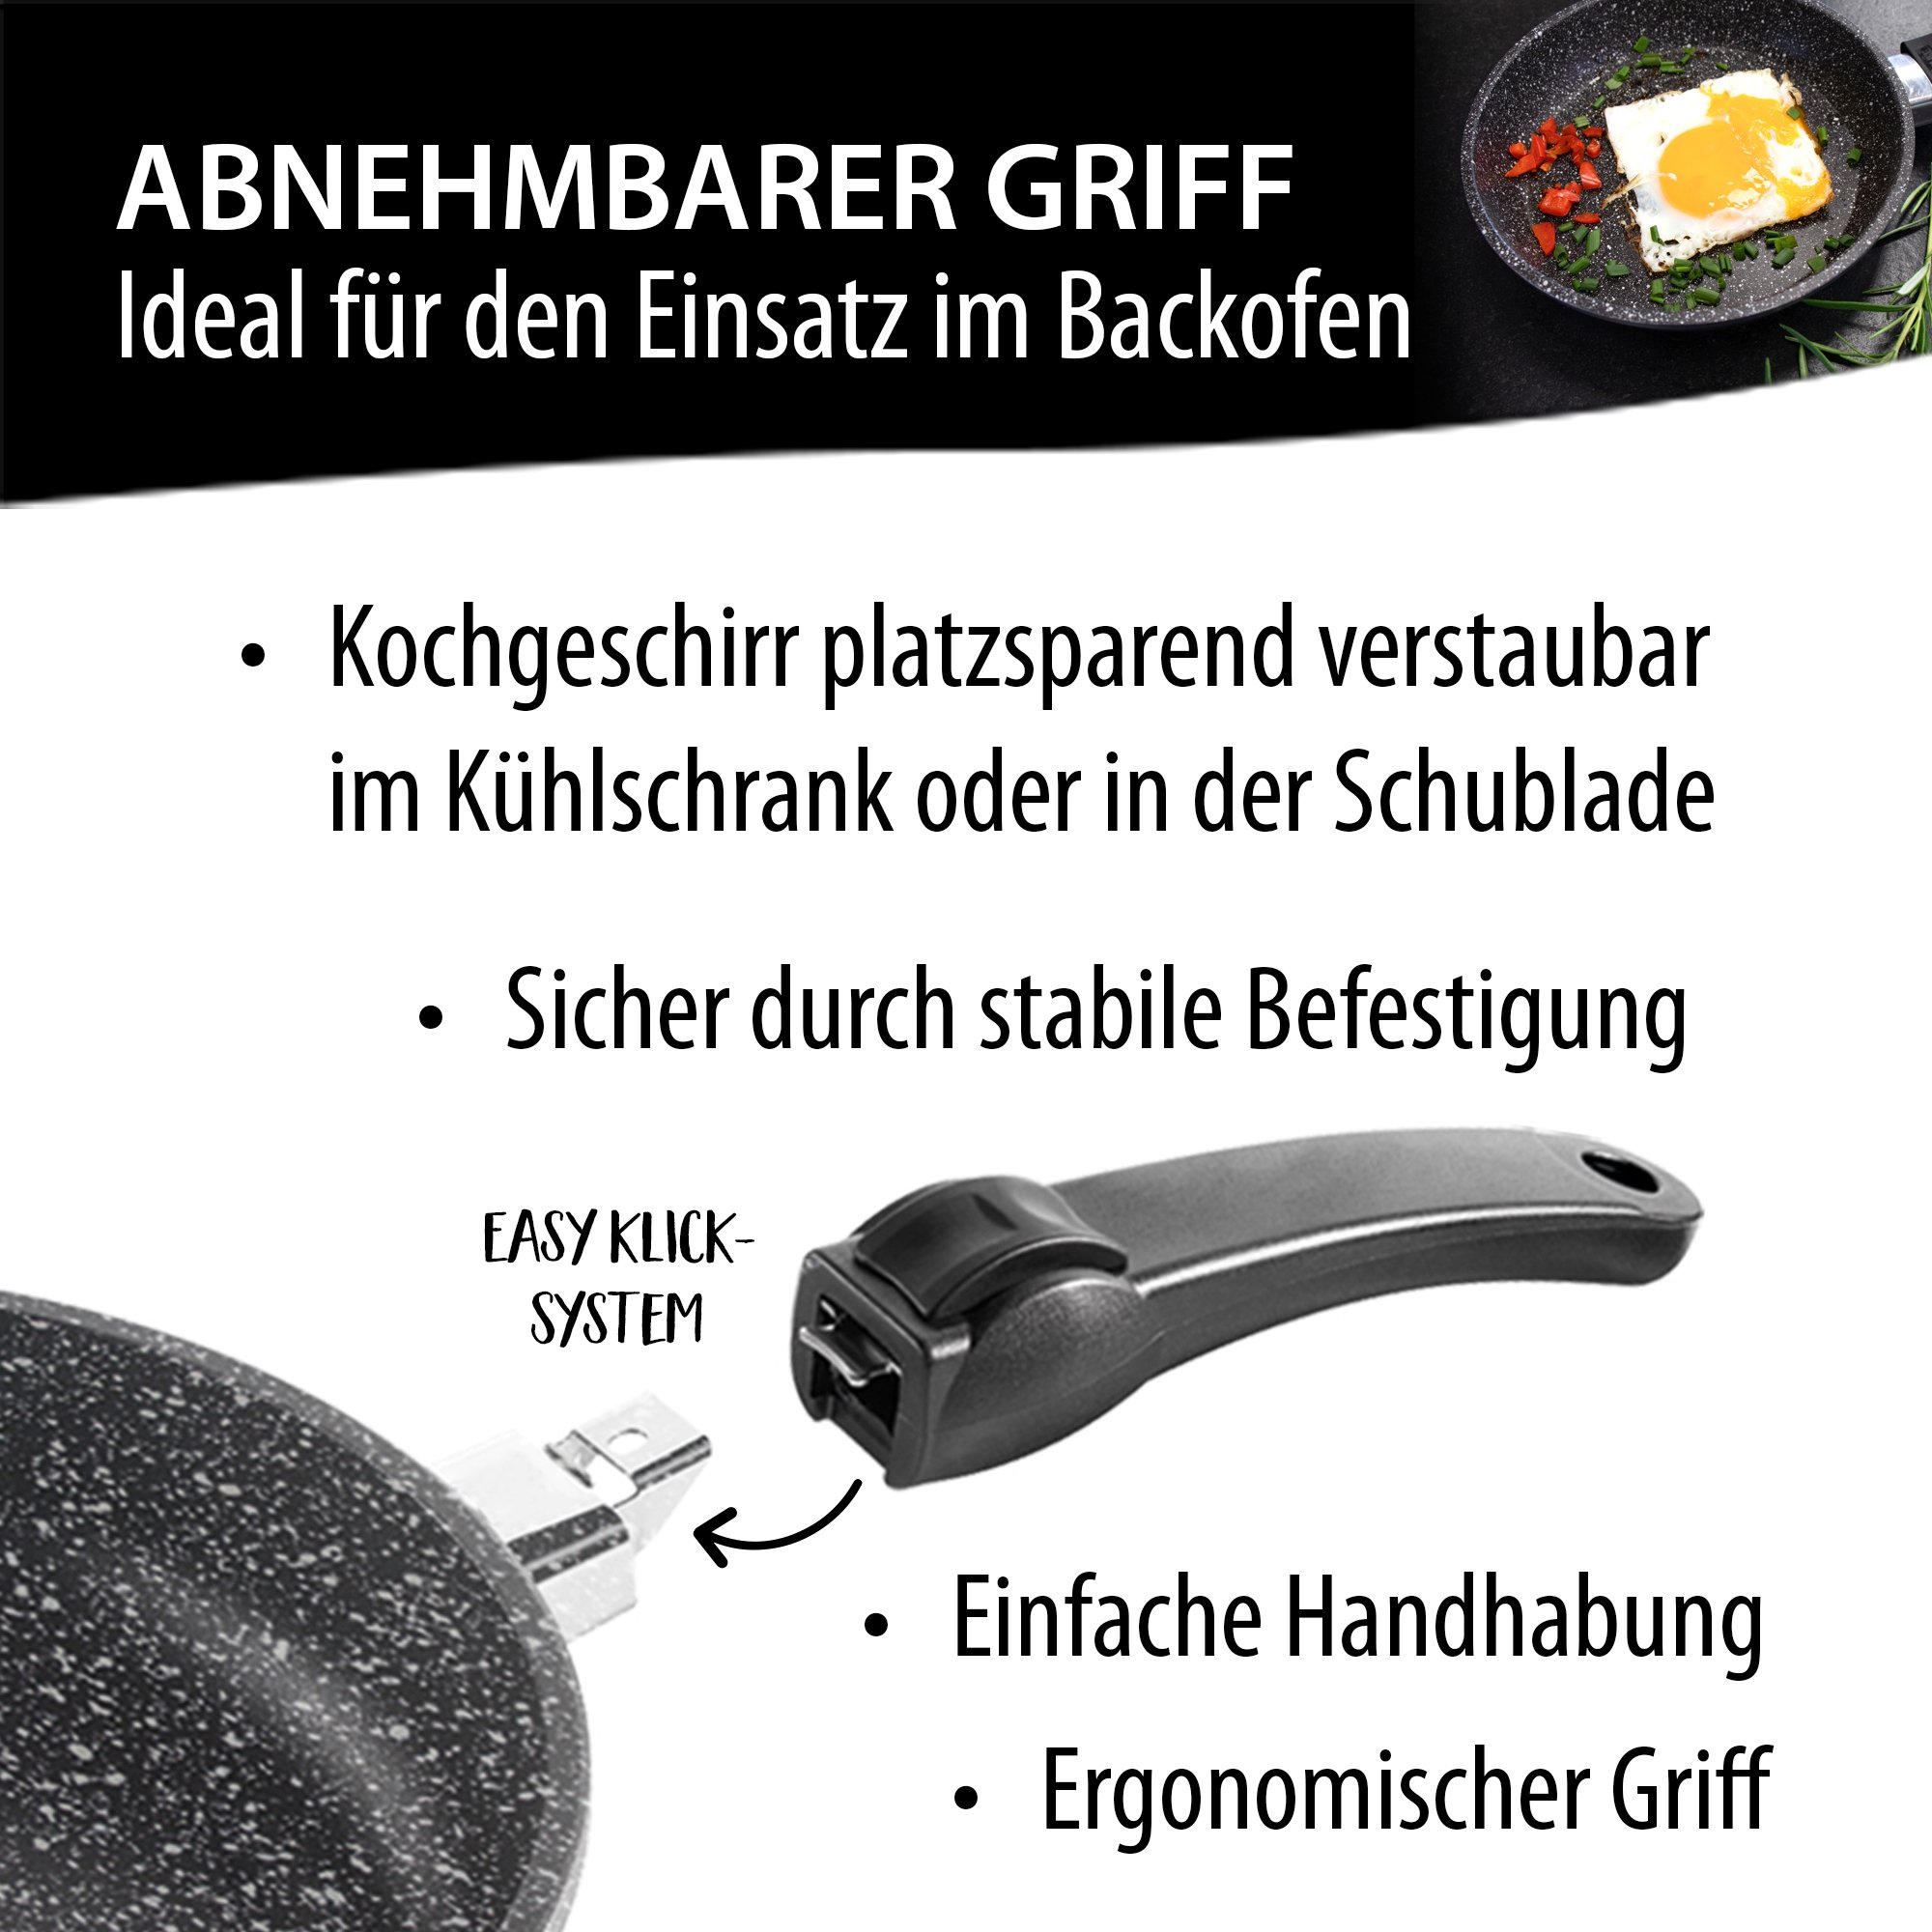 STONELINE® Grill esquinero, 28x28cm, Made in Germany, fundición por gravedad, con asa extraíble, inducción